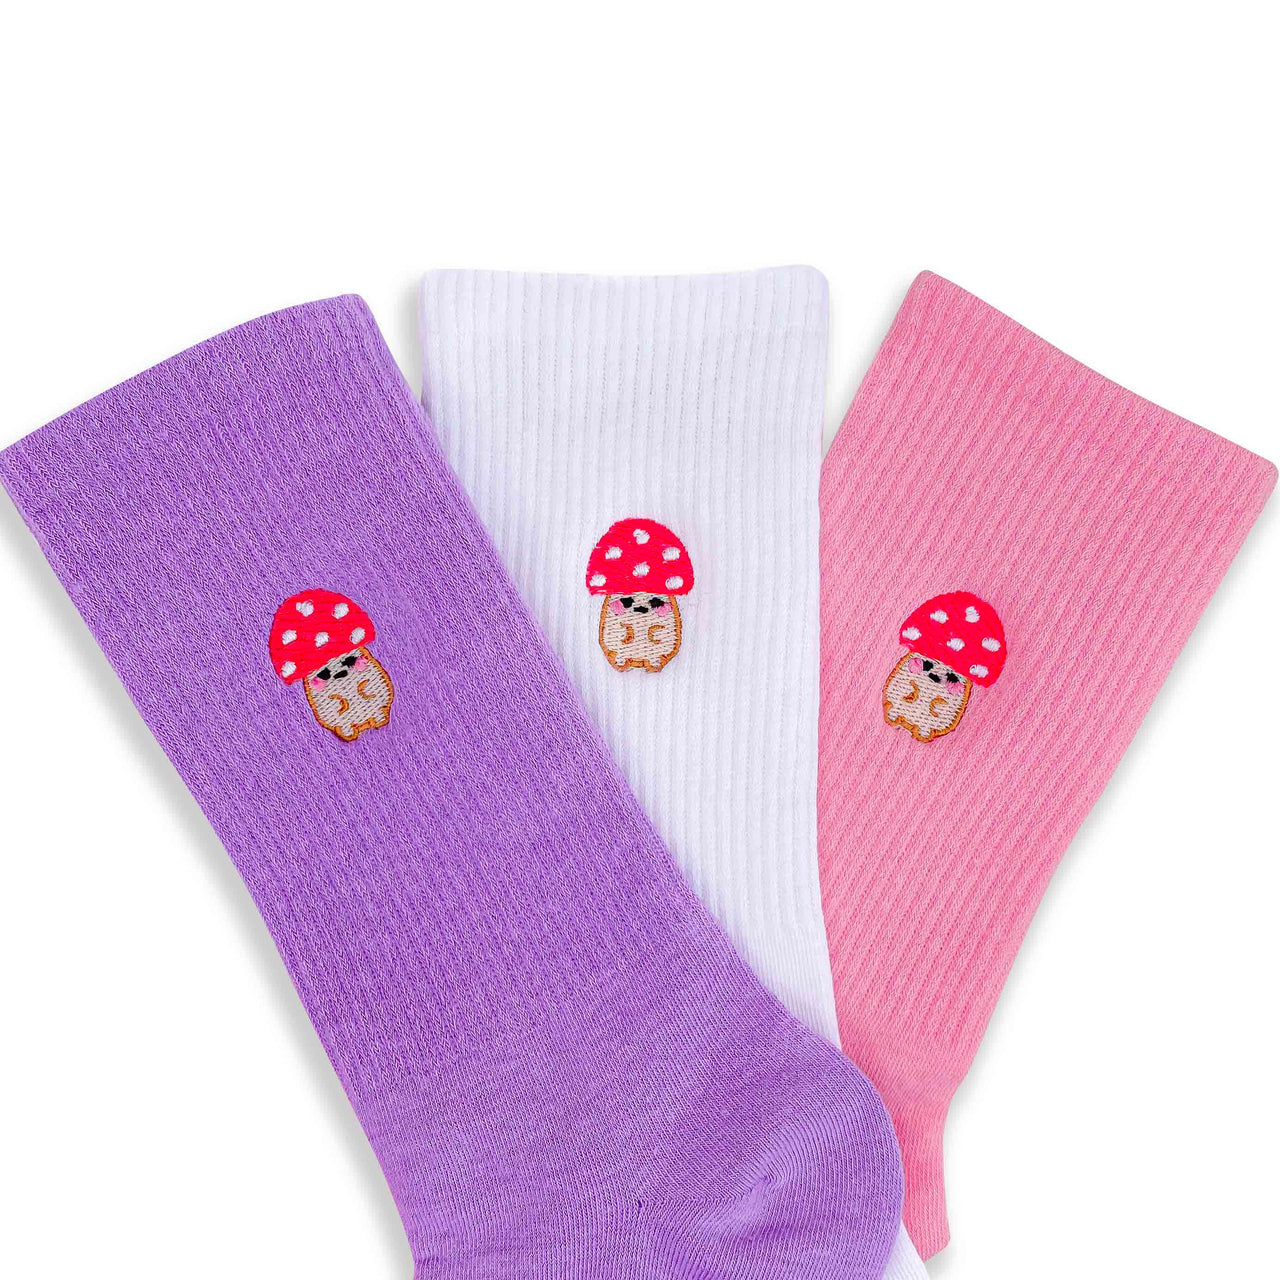 Mushroom Friend Embroidered Socks - Momokakkoii